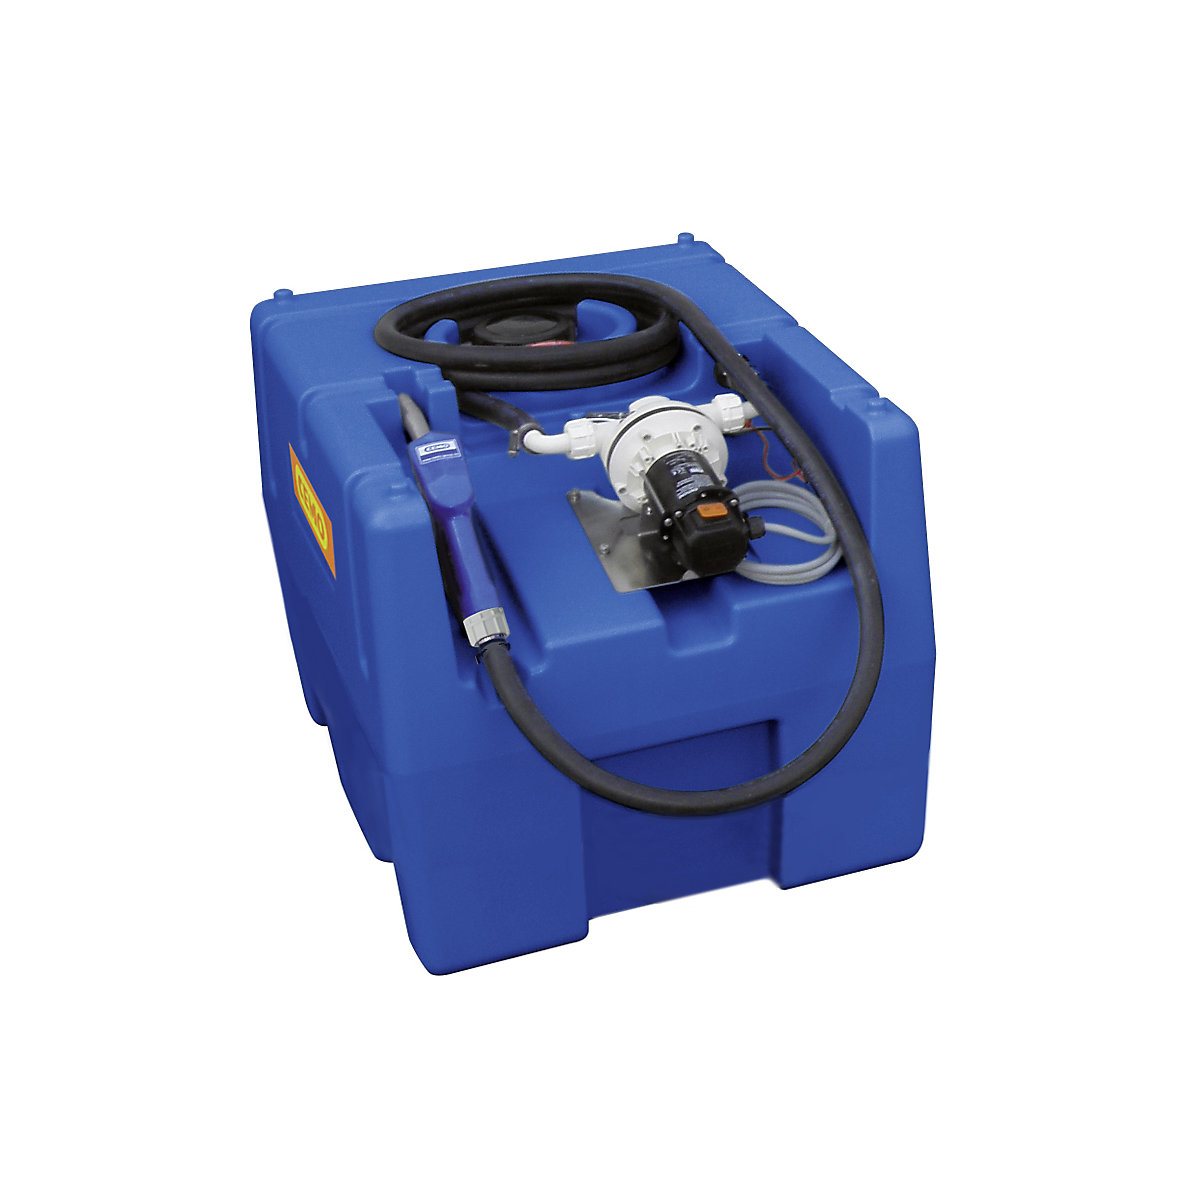 Tankanlage für AUS 32 (AdBlue®) CEMO, Volumen 200 l, mit Automatik-Zapfventil, Elektropumpe 24 V, Breite 600 mm-1